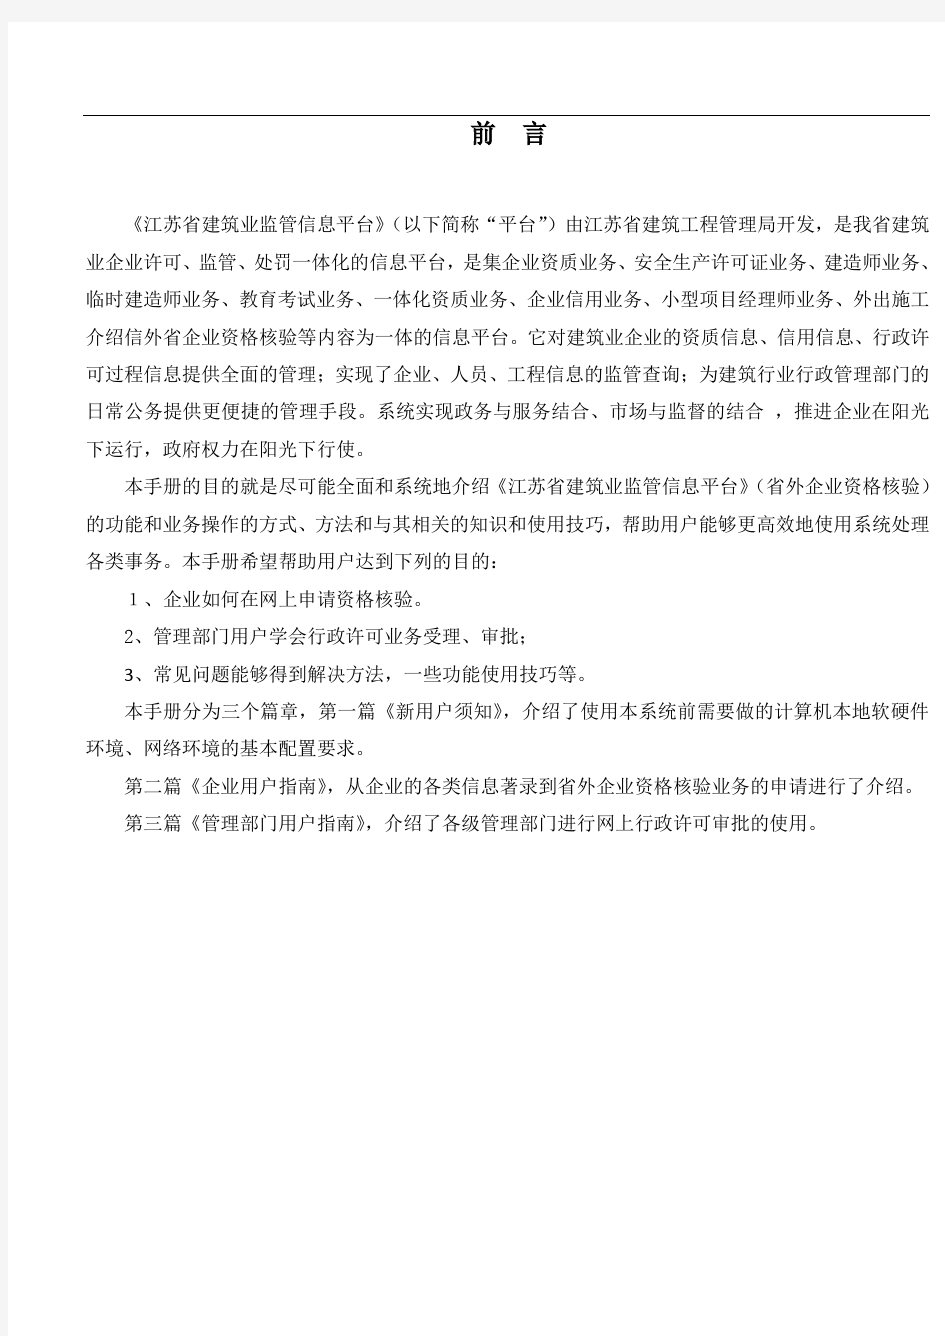 江苏省建筑业监管信息平台——省外企业资格核验分册